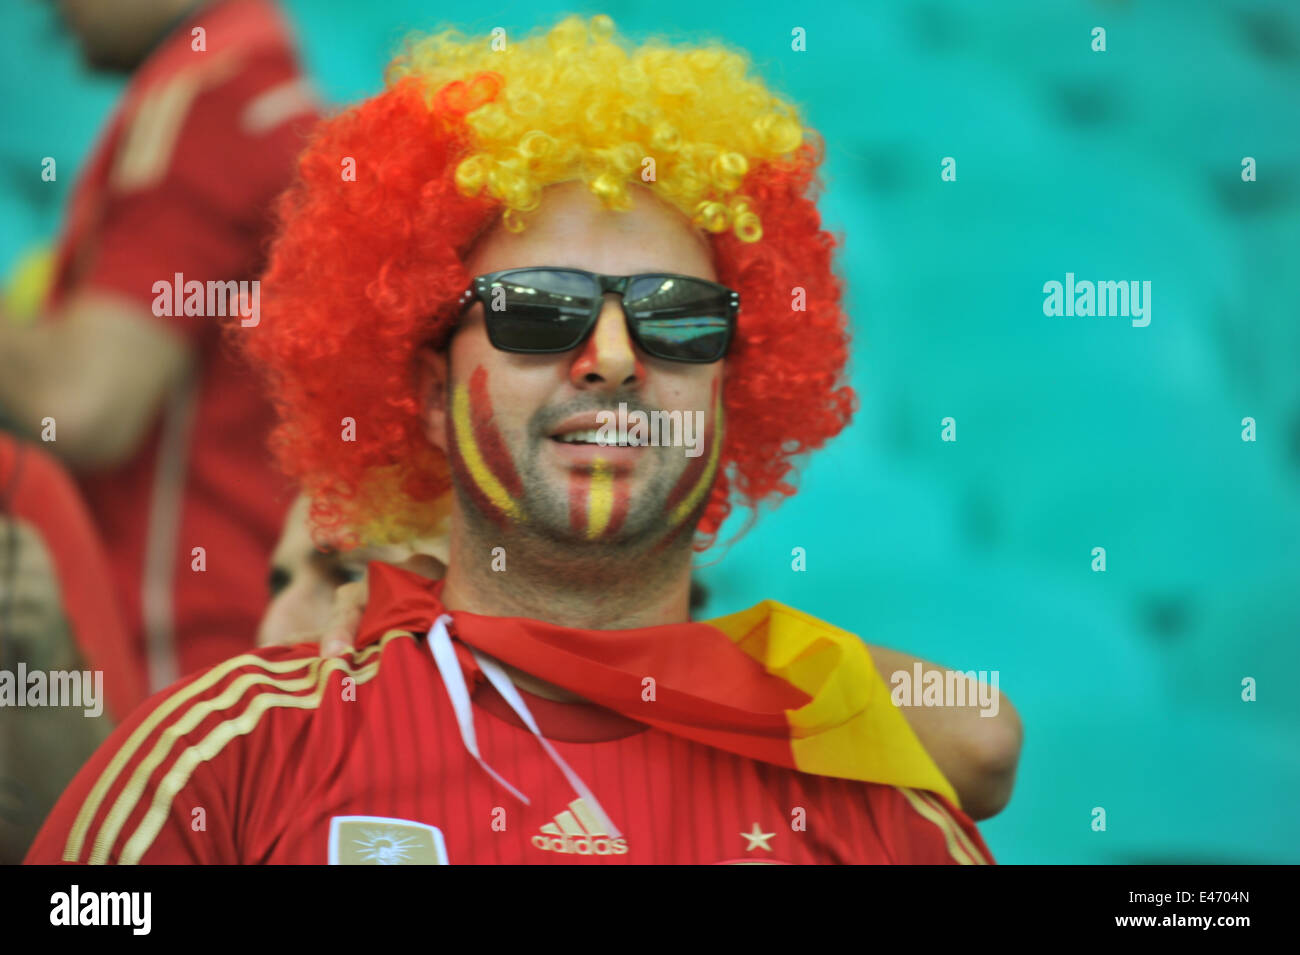 WM 2014, Hollande vs Spanien (5:1), Ventilateur Spanischer, Salvador da Bahia, Brésil. Usage éditorial uniquement. Banque D'Images